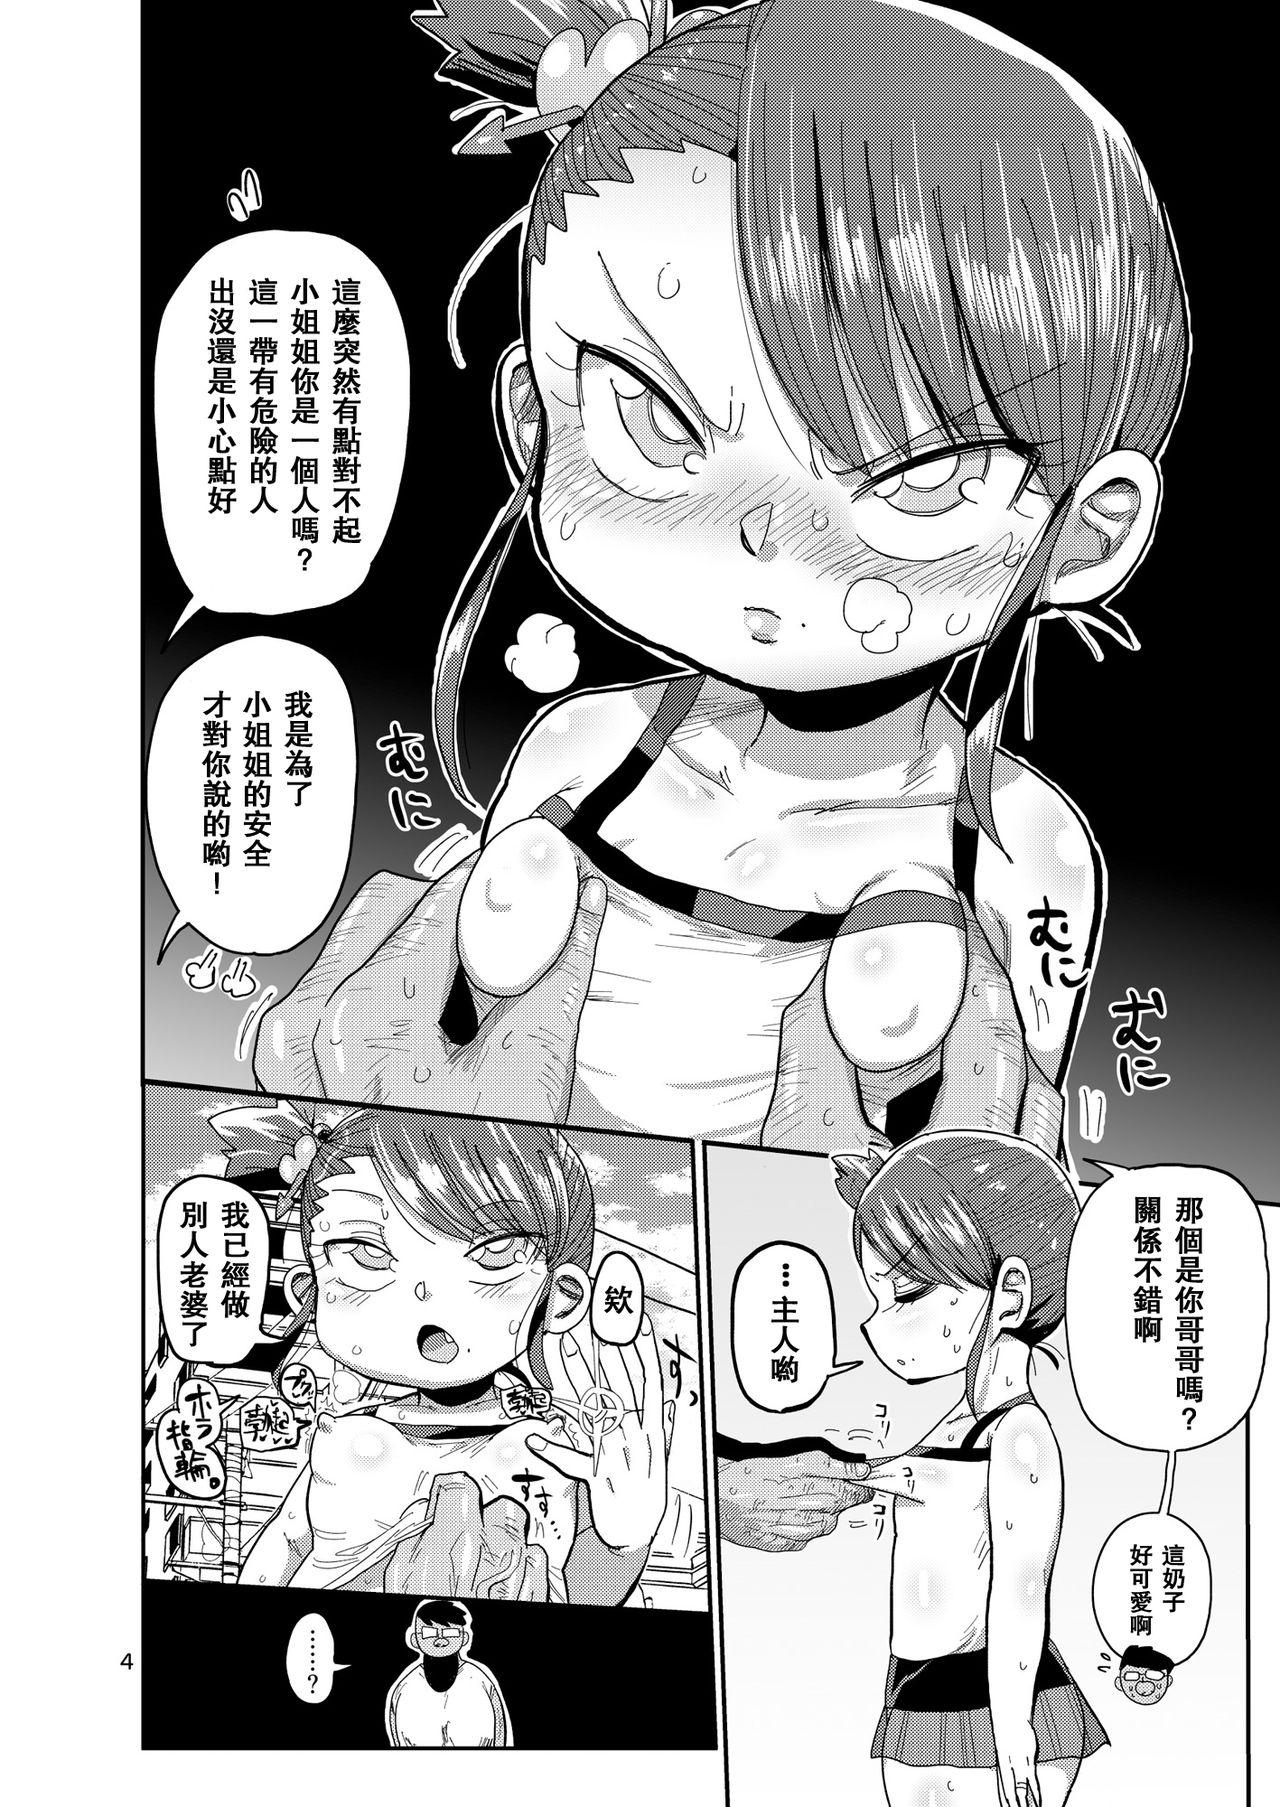 Asians Watashi no Mawari ni wa Kiken ga Ippai! - Original Milfporn - Page 3